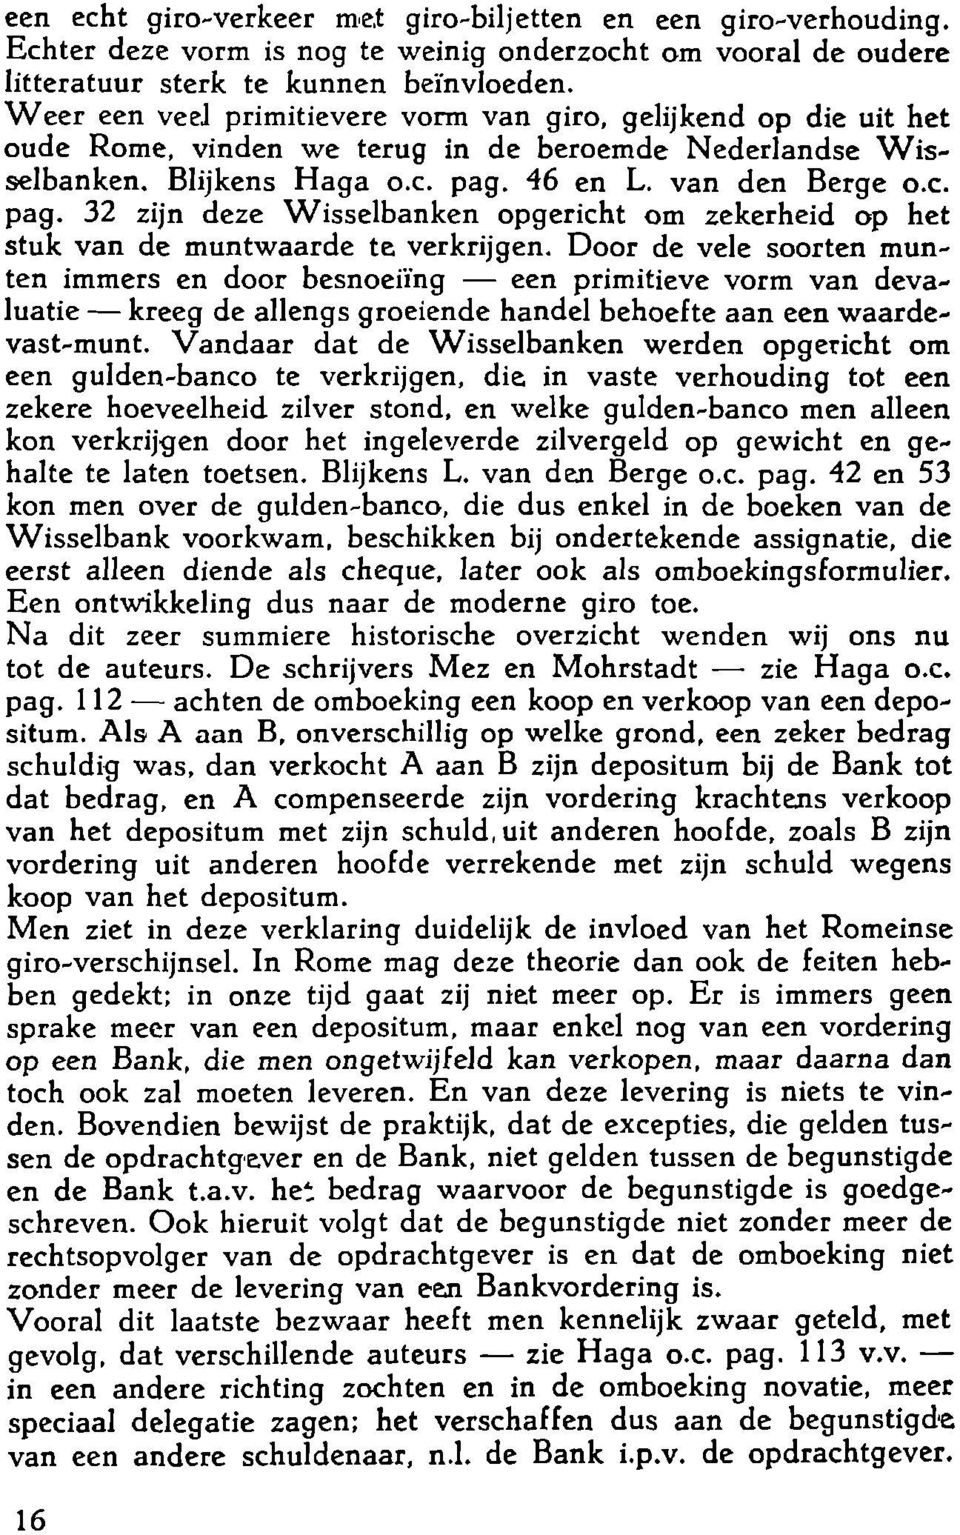 46 en L. van den Berge o.e. pag. 32 zijn deze Wisselbanken opgericht om zekerheid op het stuk van de muntwaarde te verkrijgen.